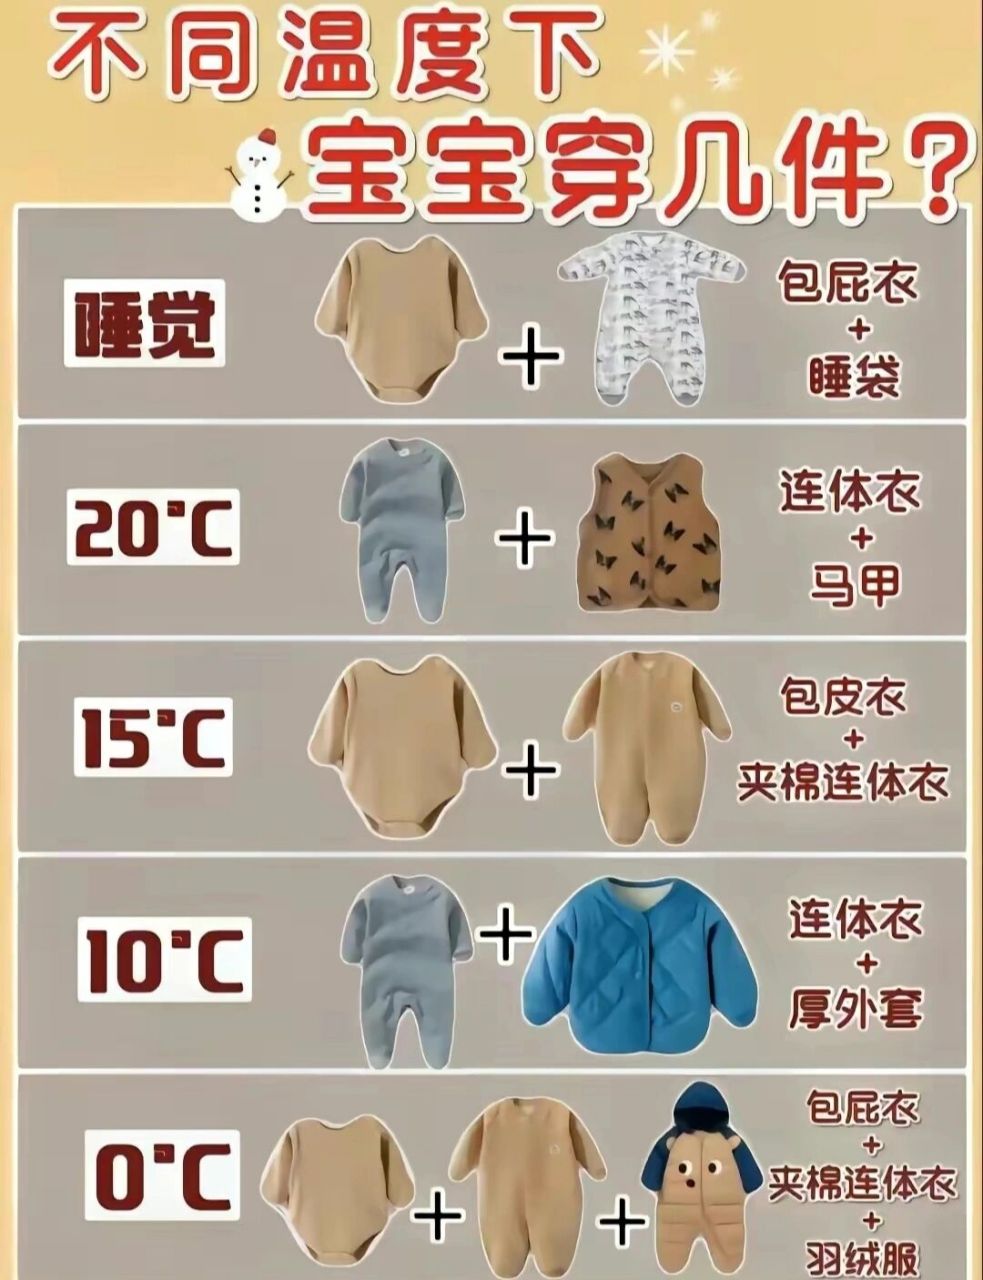 儿童穿衣气温对照图图片